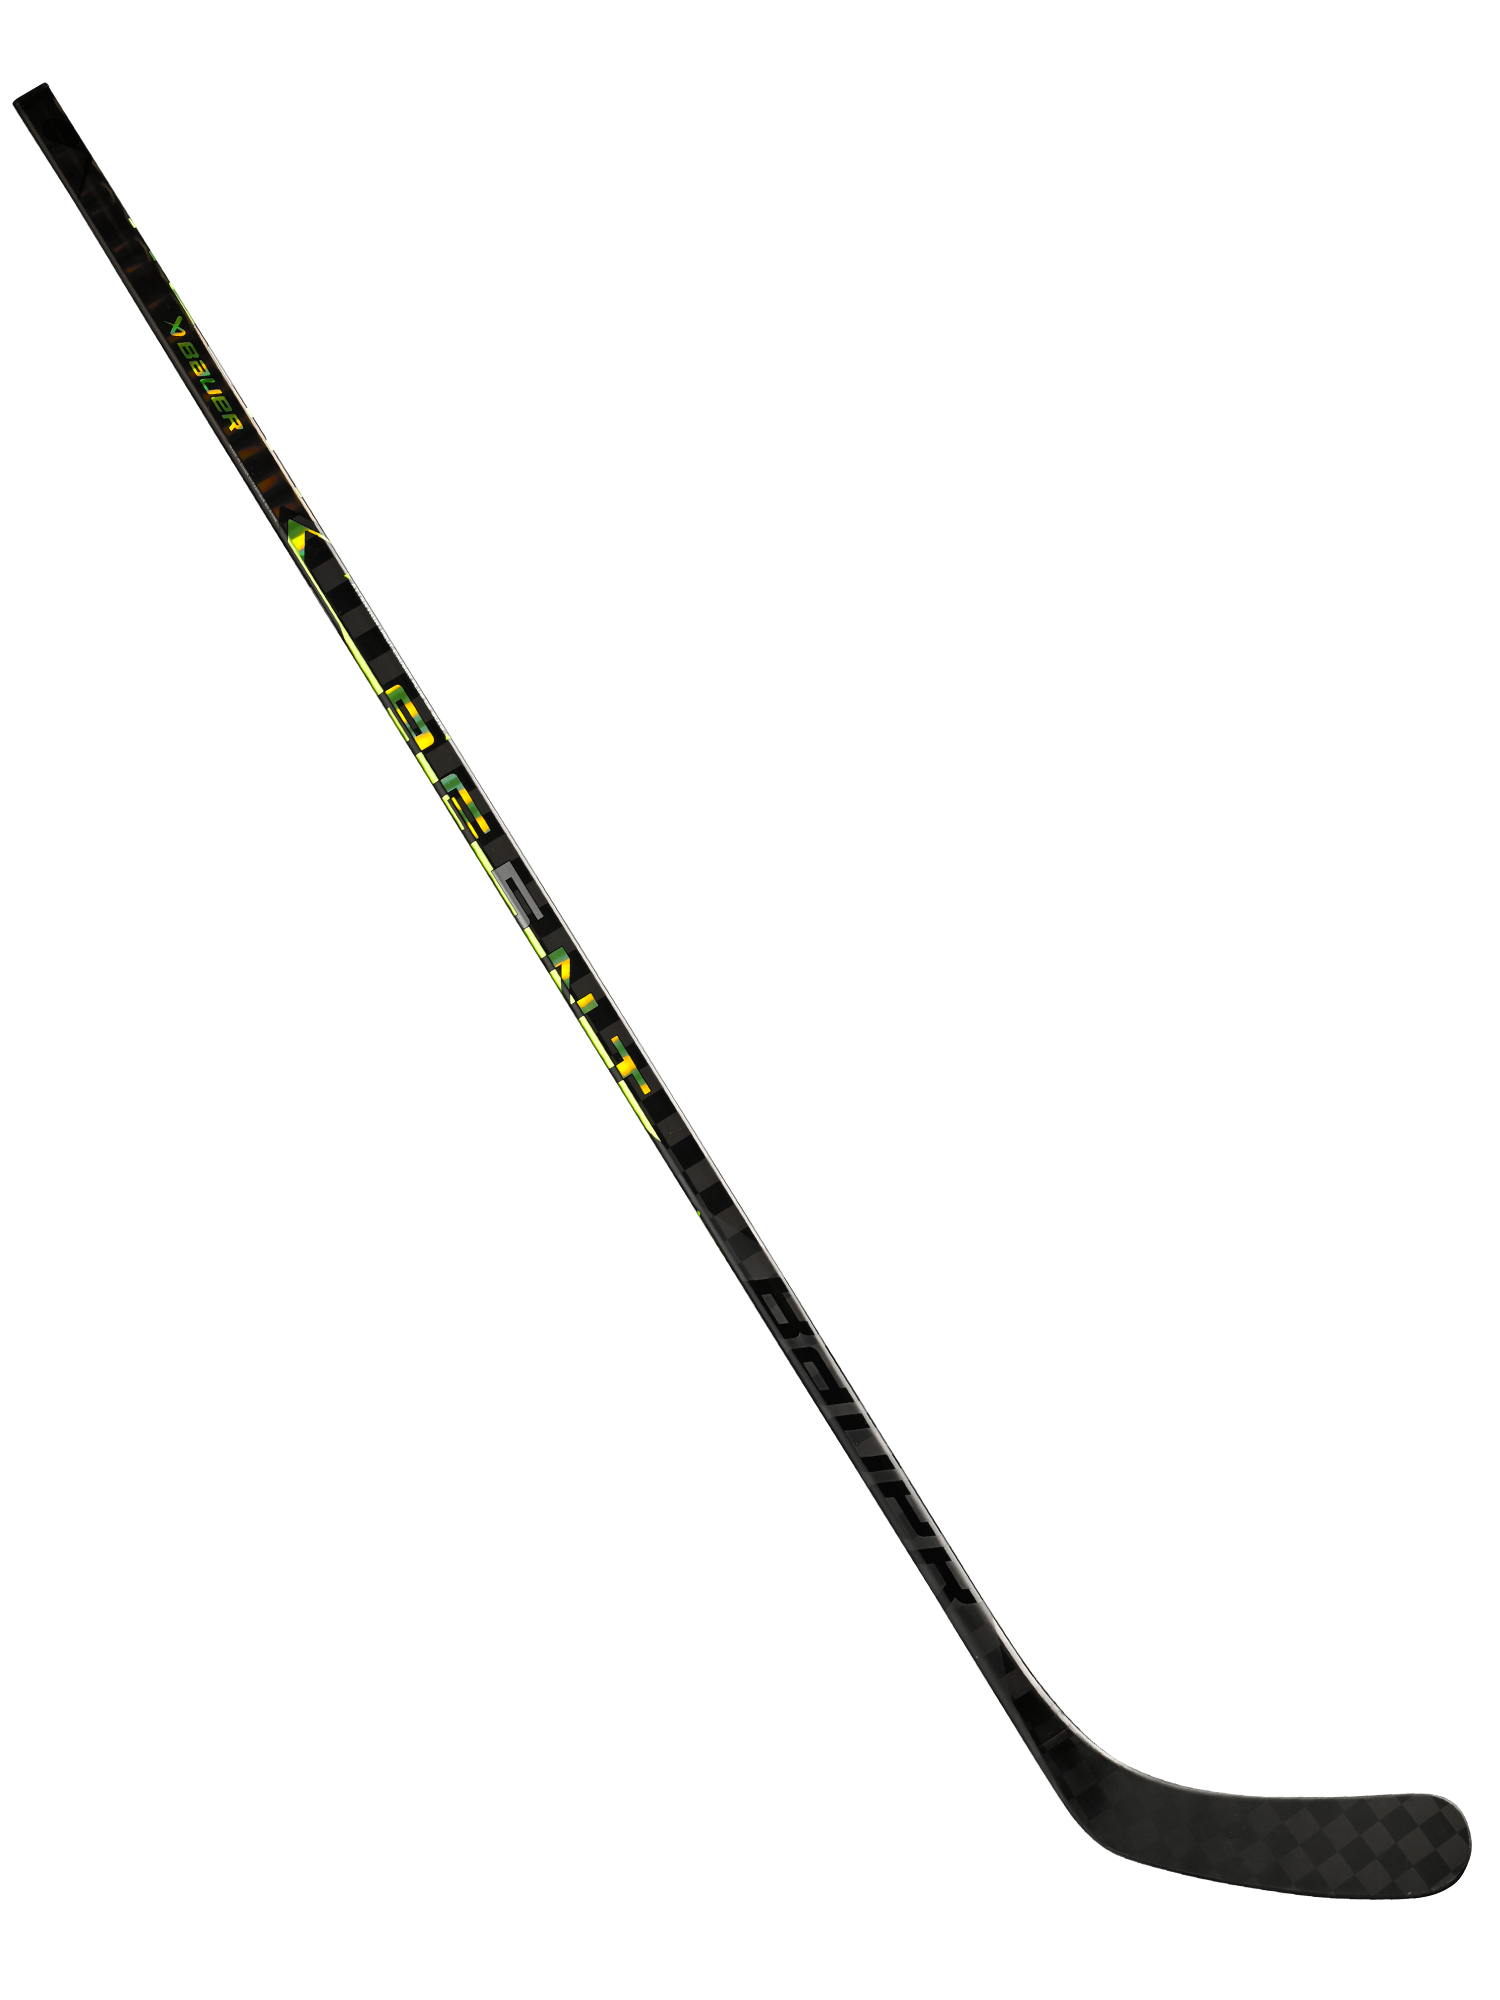 Senior Vapor Hyperlite 2 Grip Hockey Stick, 65-Flex from Bauer 